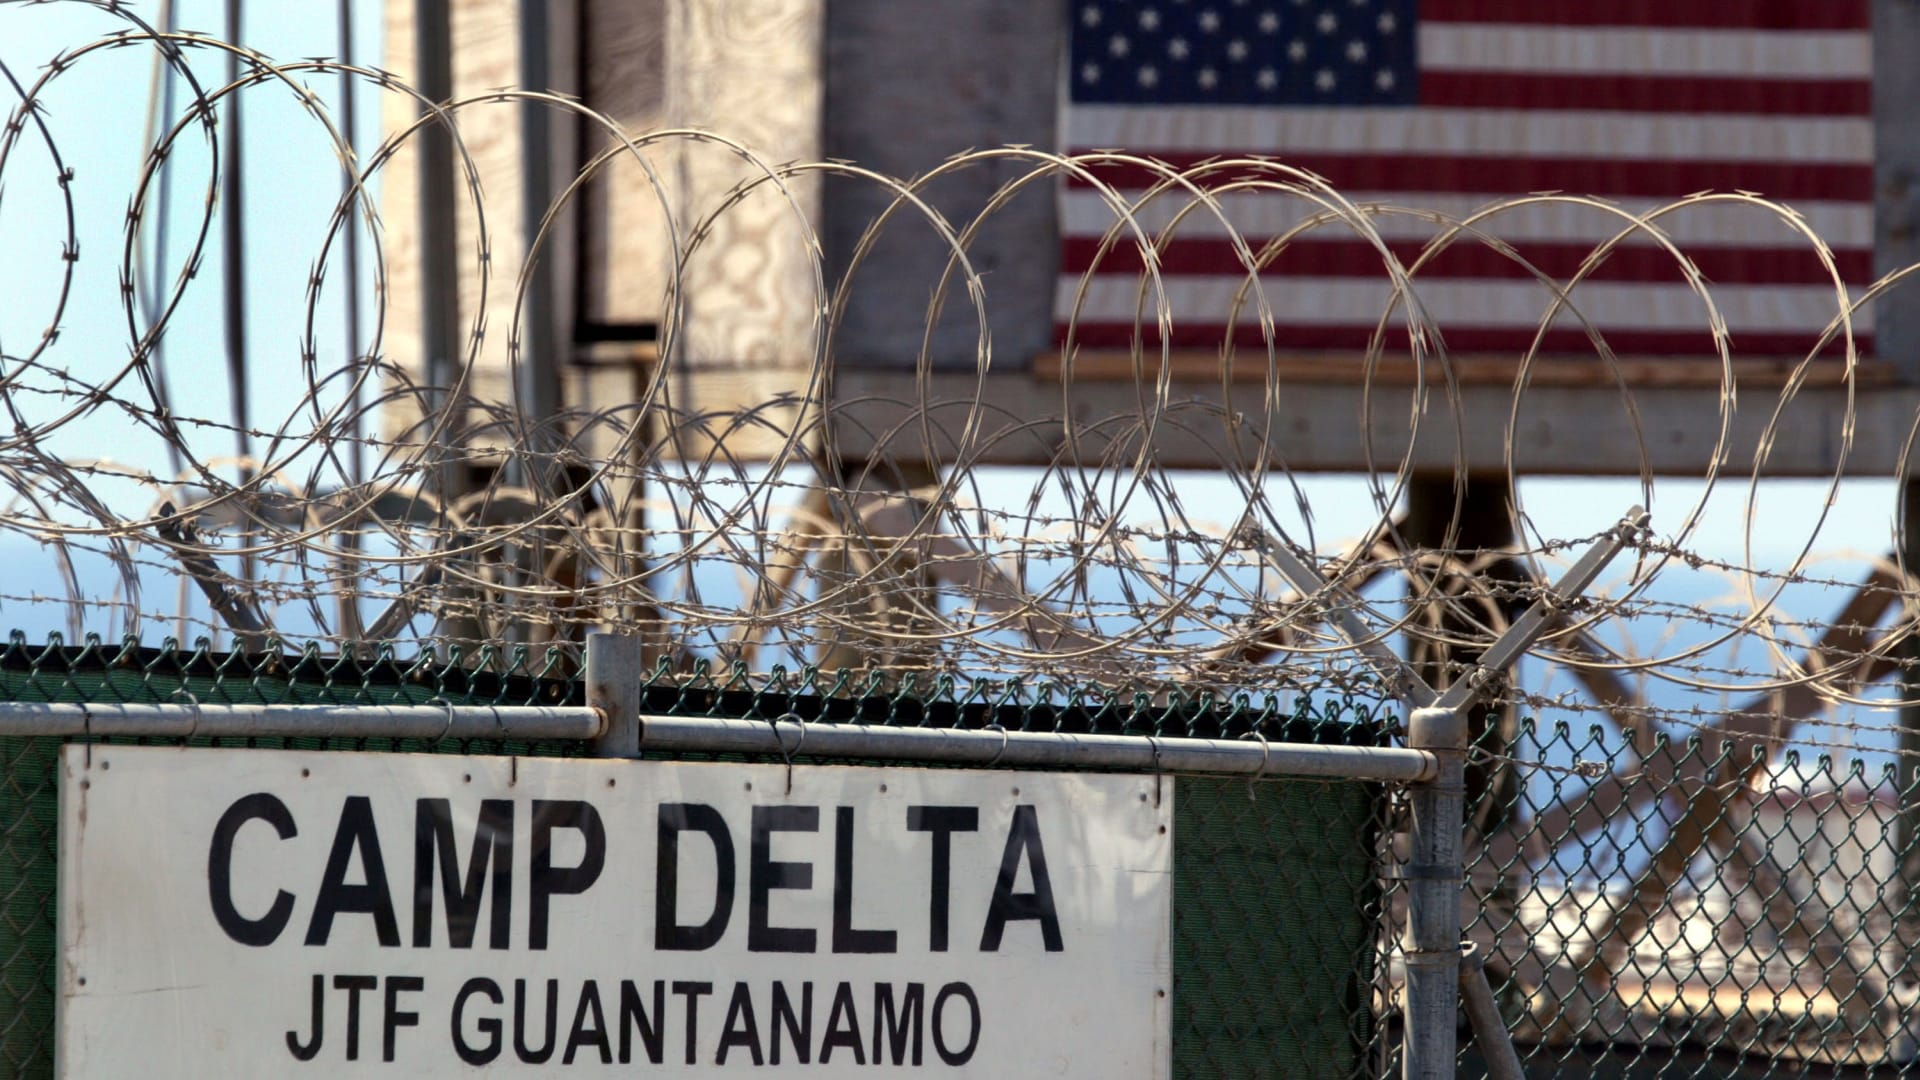 هل يخرج المعتقلون من "غوانتانامو" لقتل الأمريكيين؟